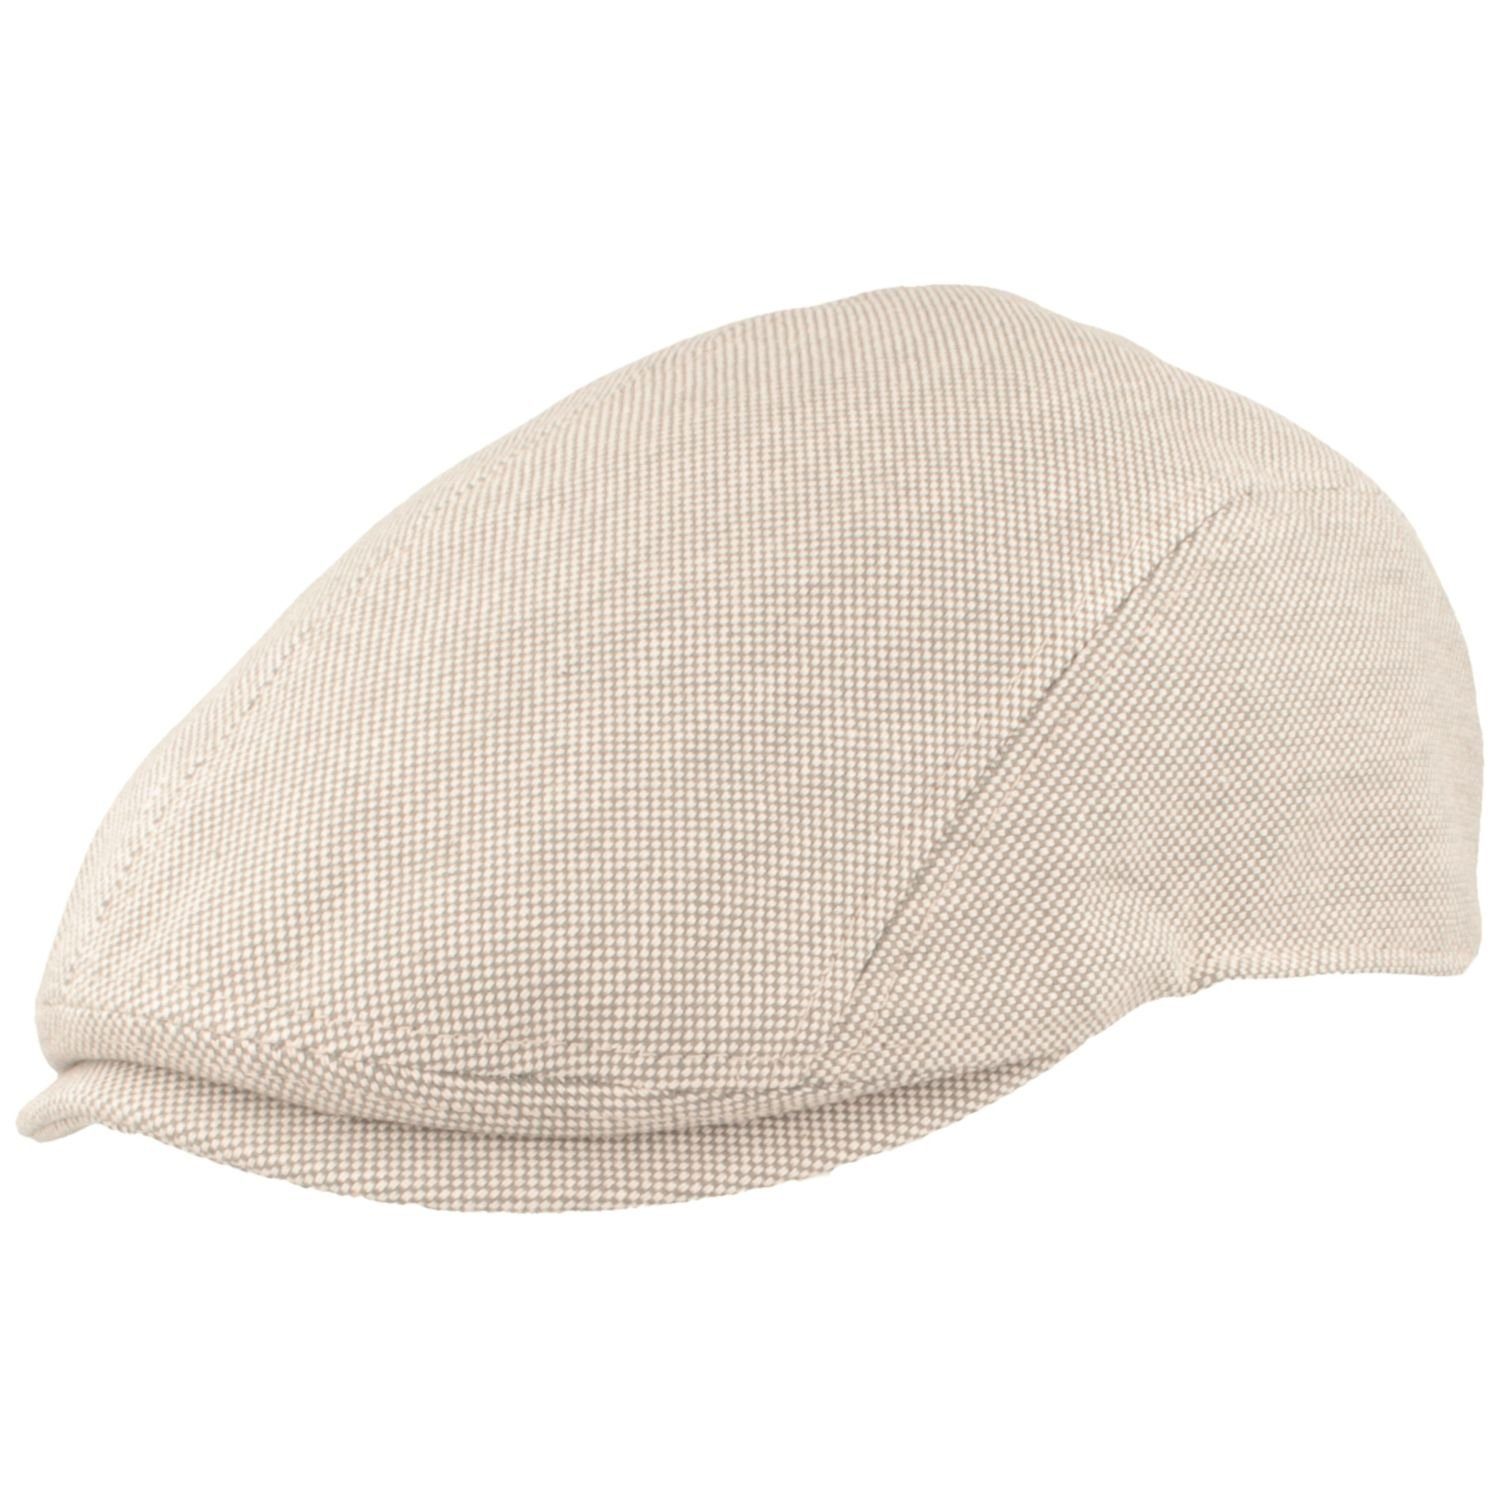 Bullani Schiebermütze Sommer-Mütze aus 100% Baumwoll-Strukturstoff 530 grau mel.